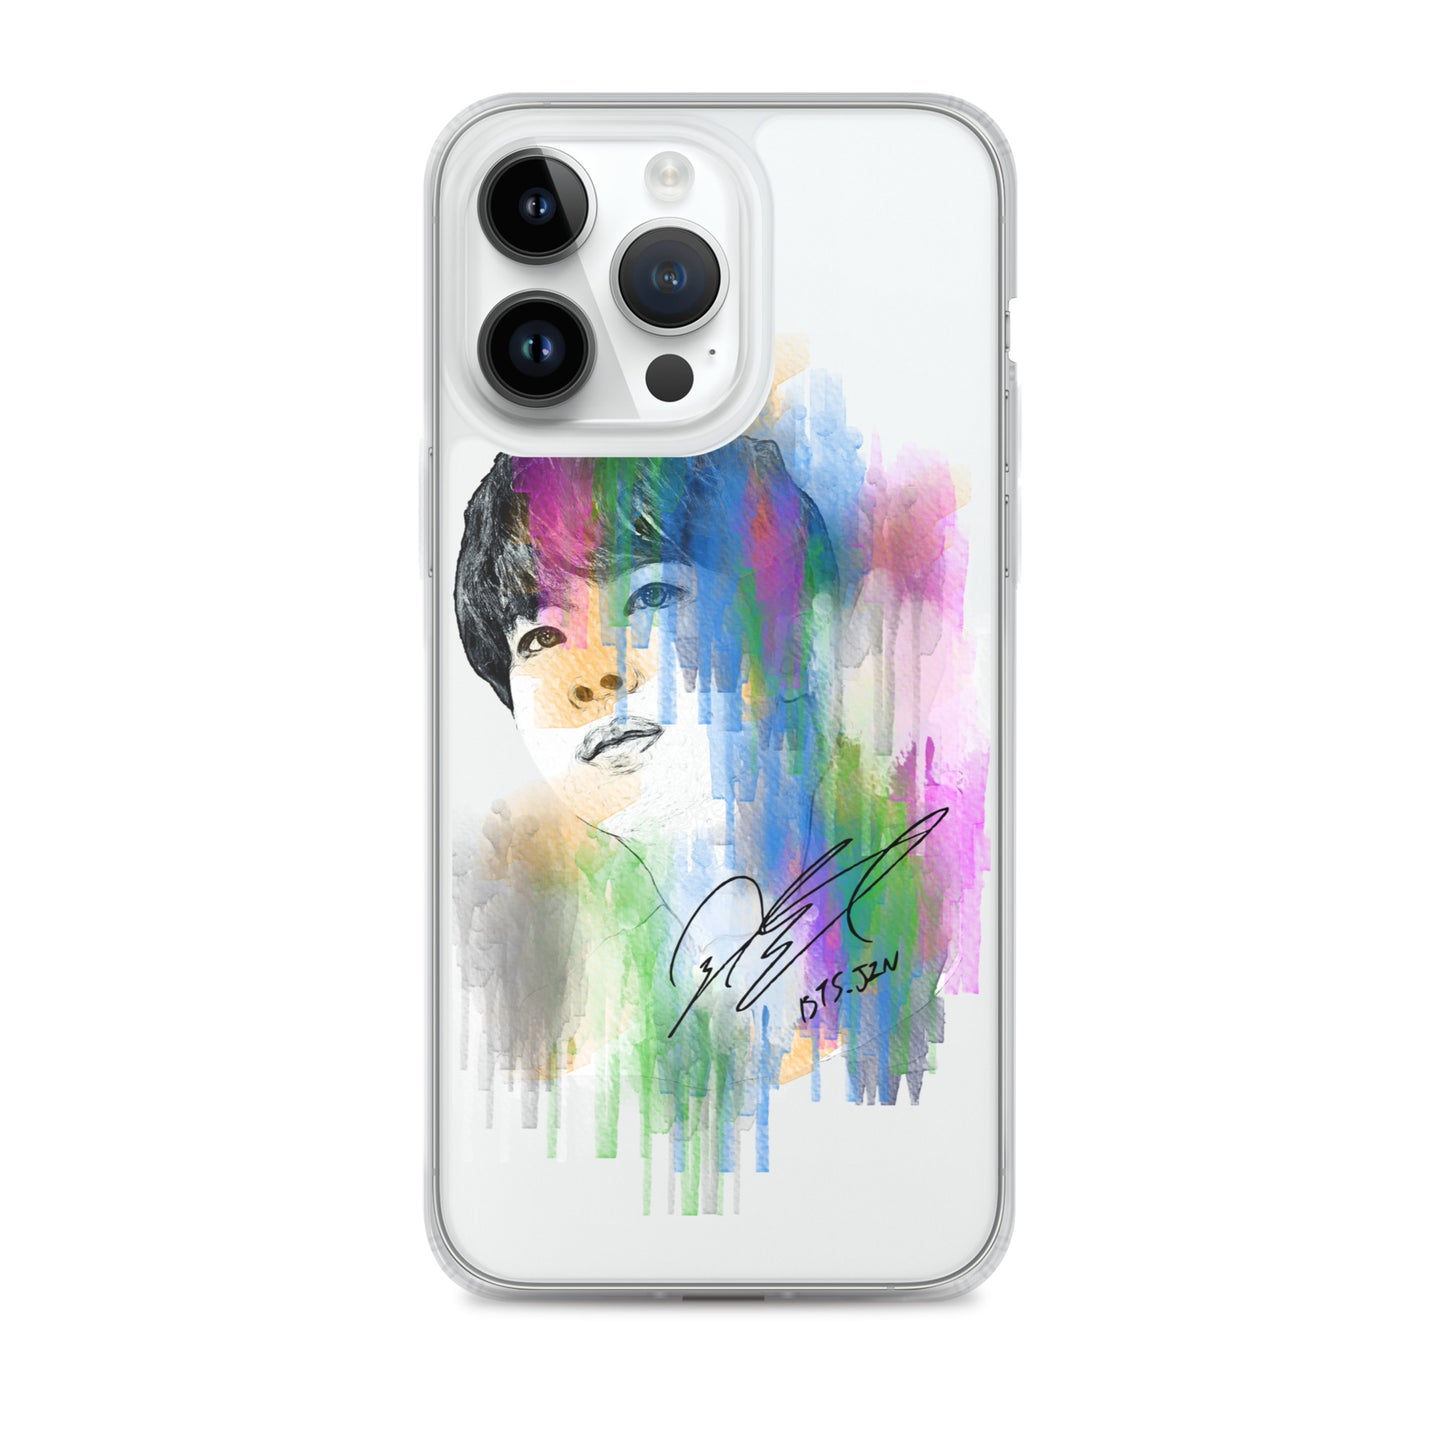 BTS Jin, Kim Seok-jin Waterpaint portrait iPhone Case